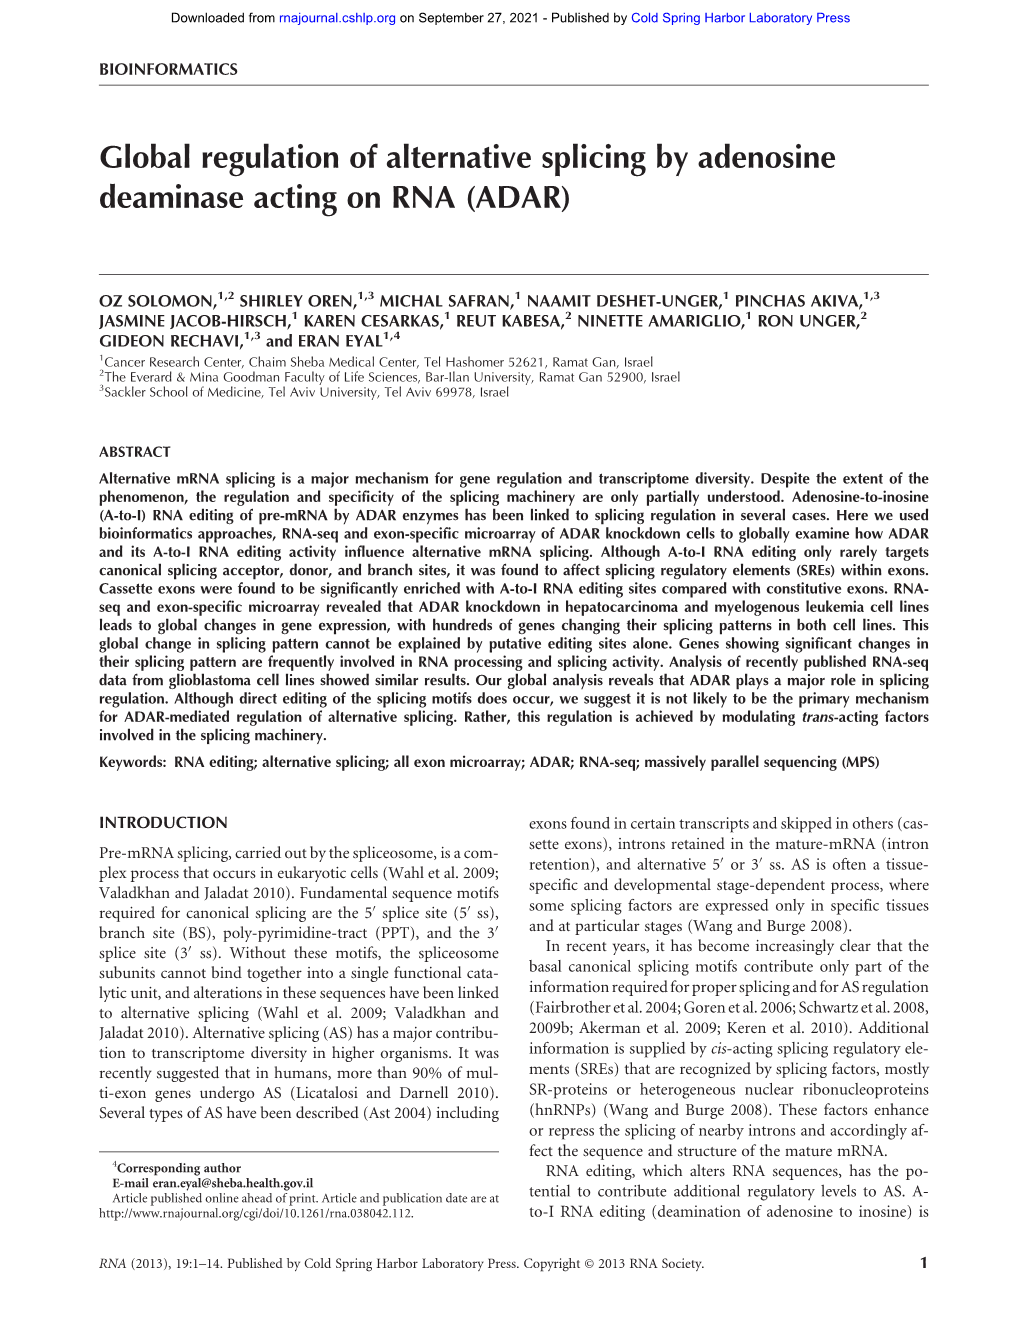 Global Regulation of Alternative Splicing by Adenosine Deaminase Acting on RNA (ADAR)